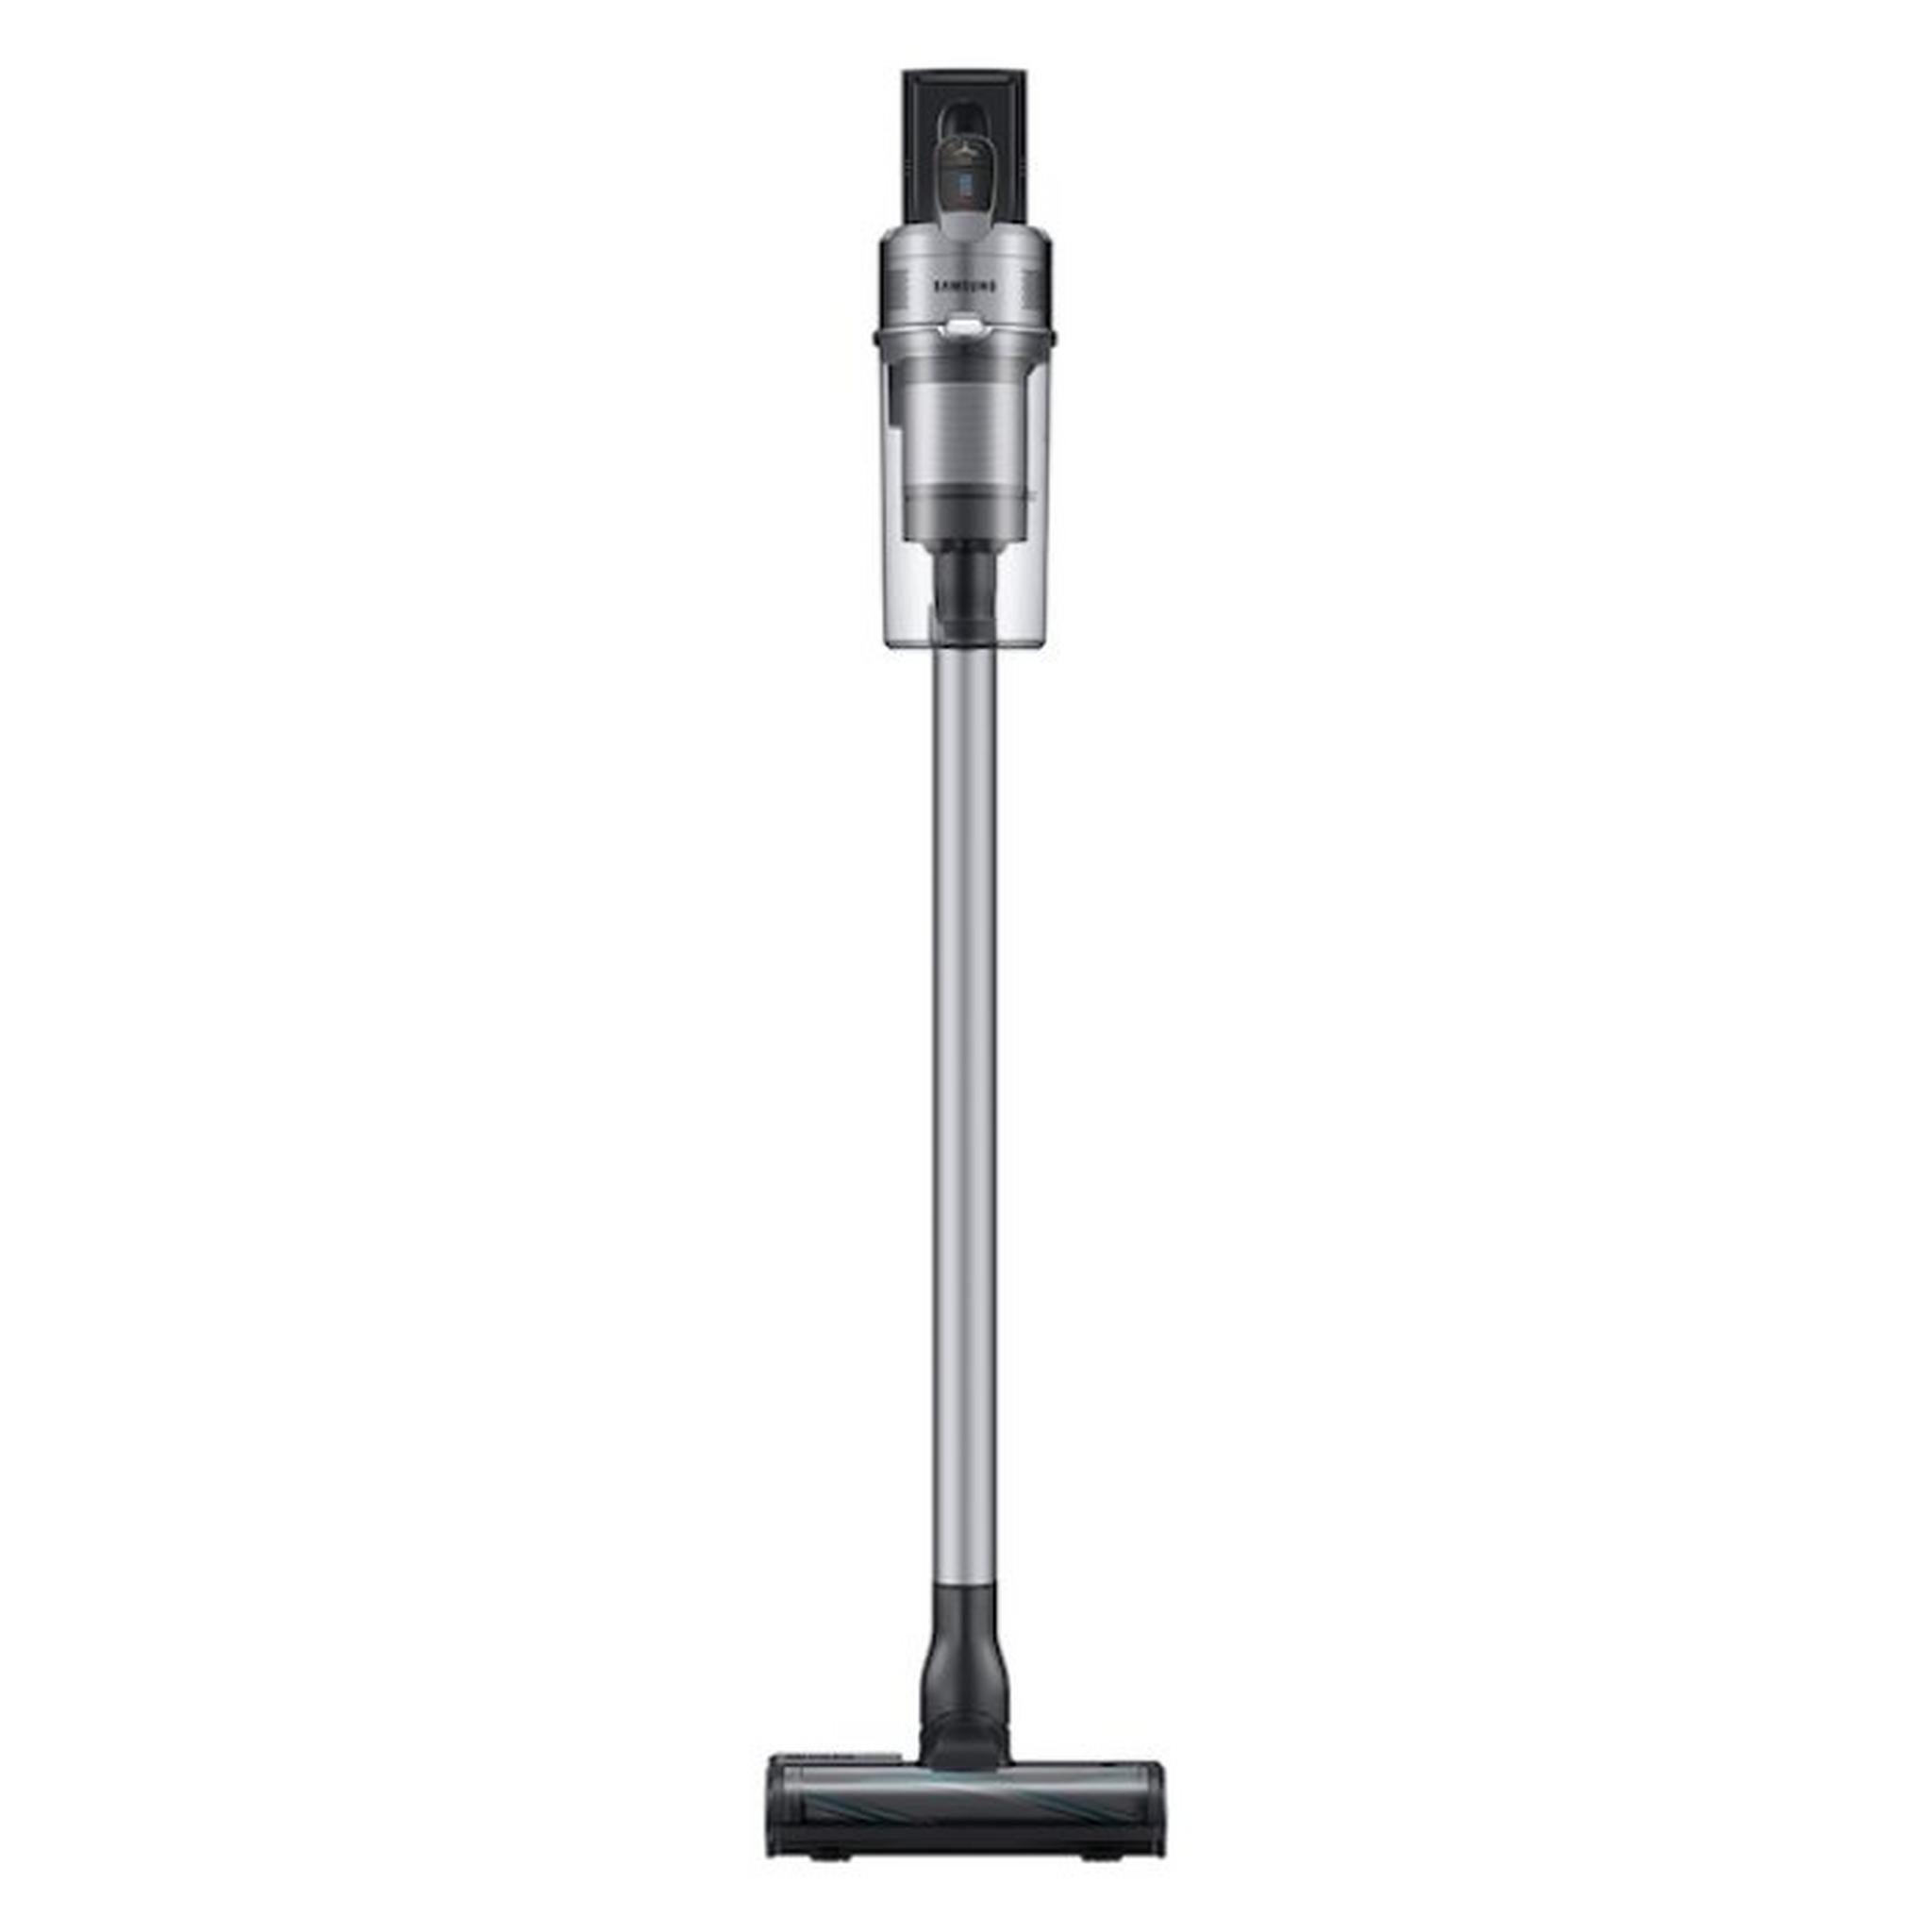 Samsung Jet 75 Complete Cordless Stick Vacuum, 550W, 0.8 Litre, VS20T7536T5 - Silver/Black